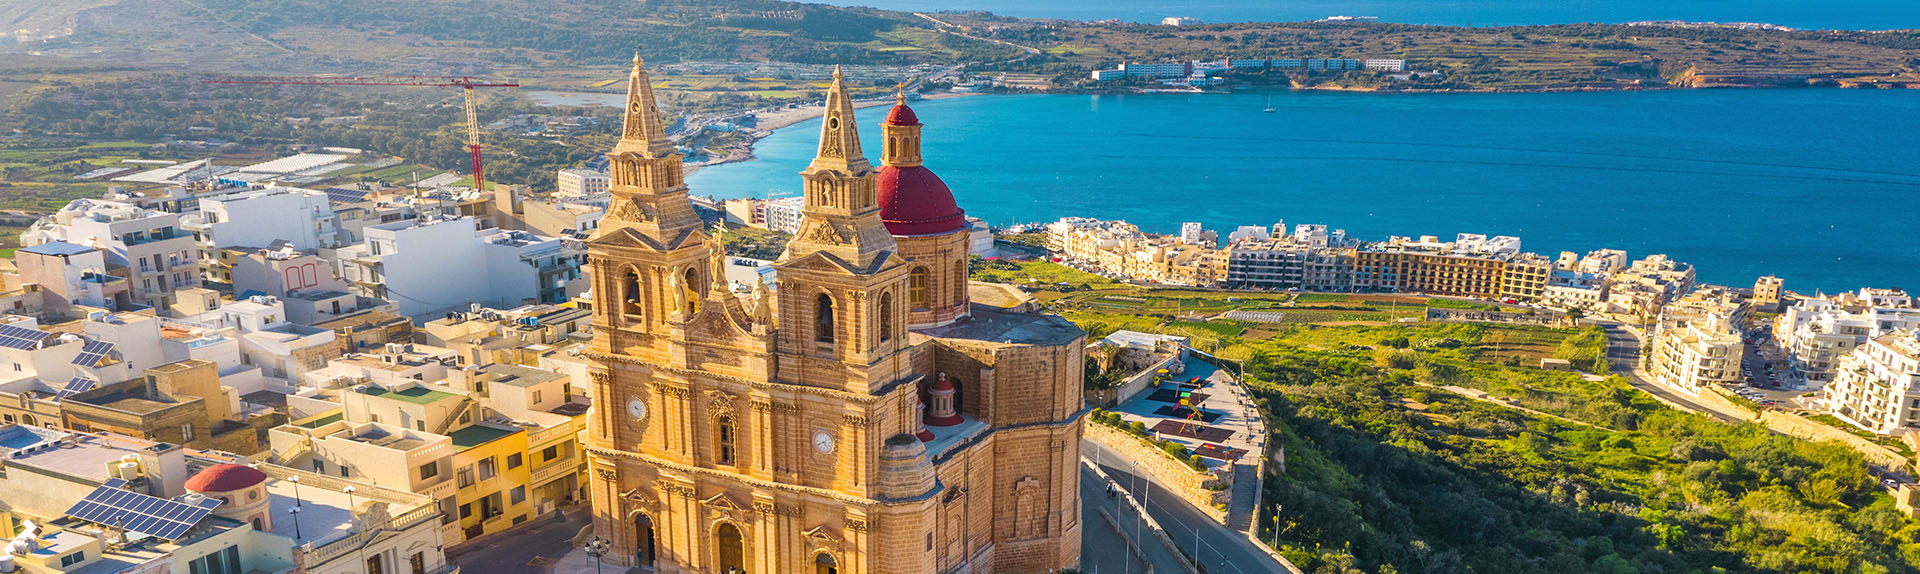 Malta Global Residence Programme